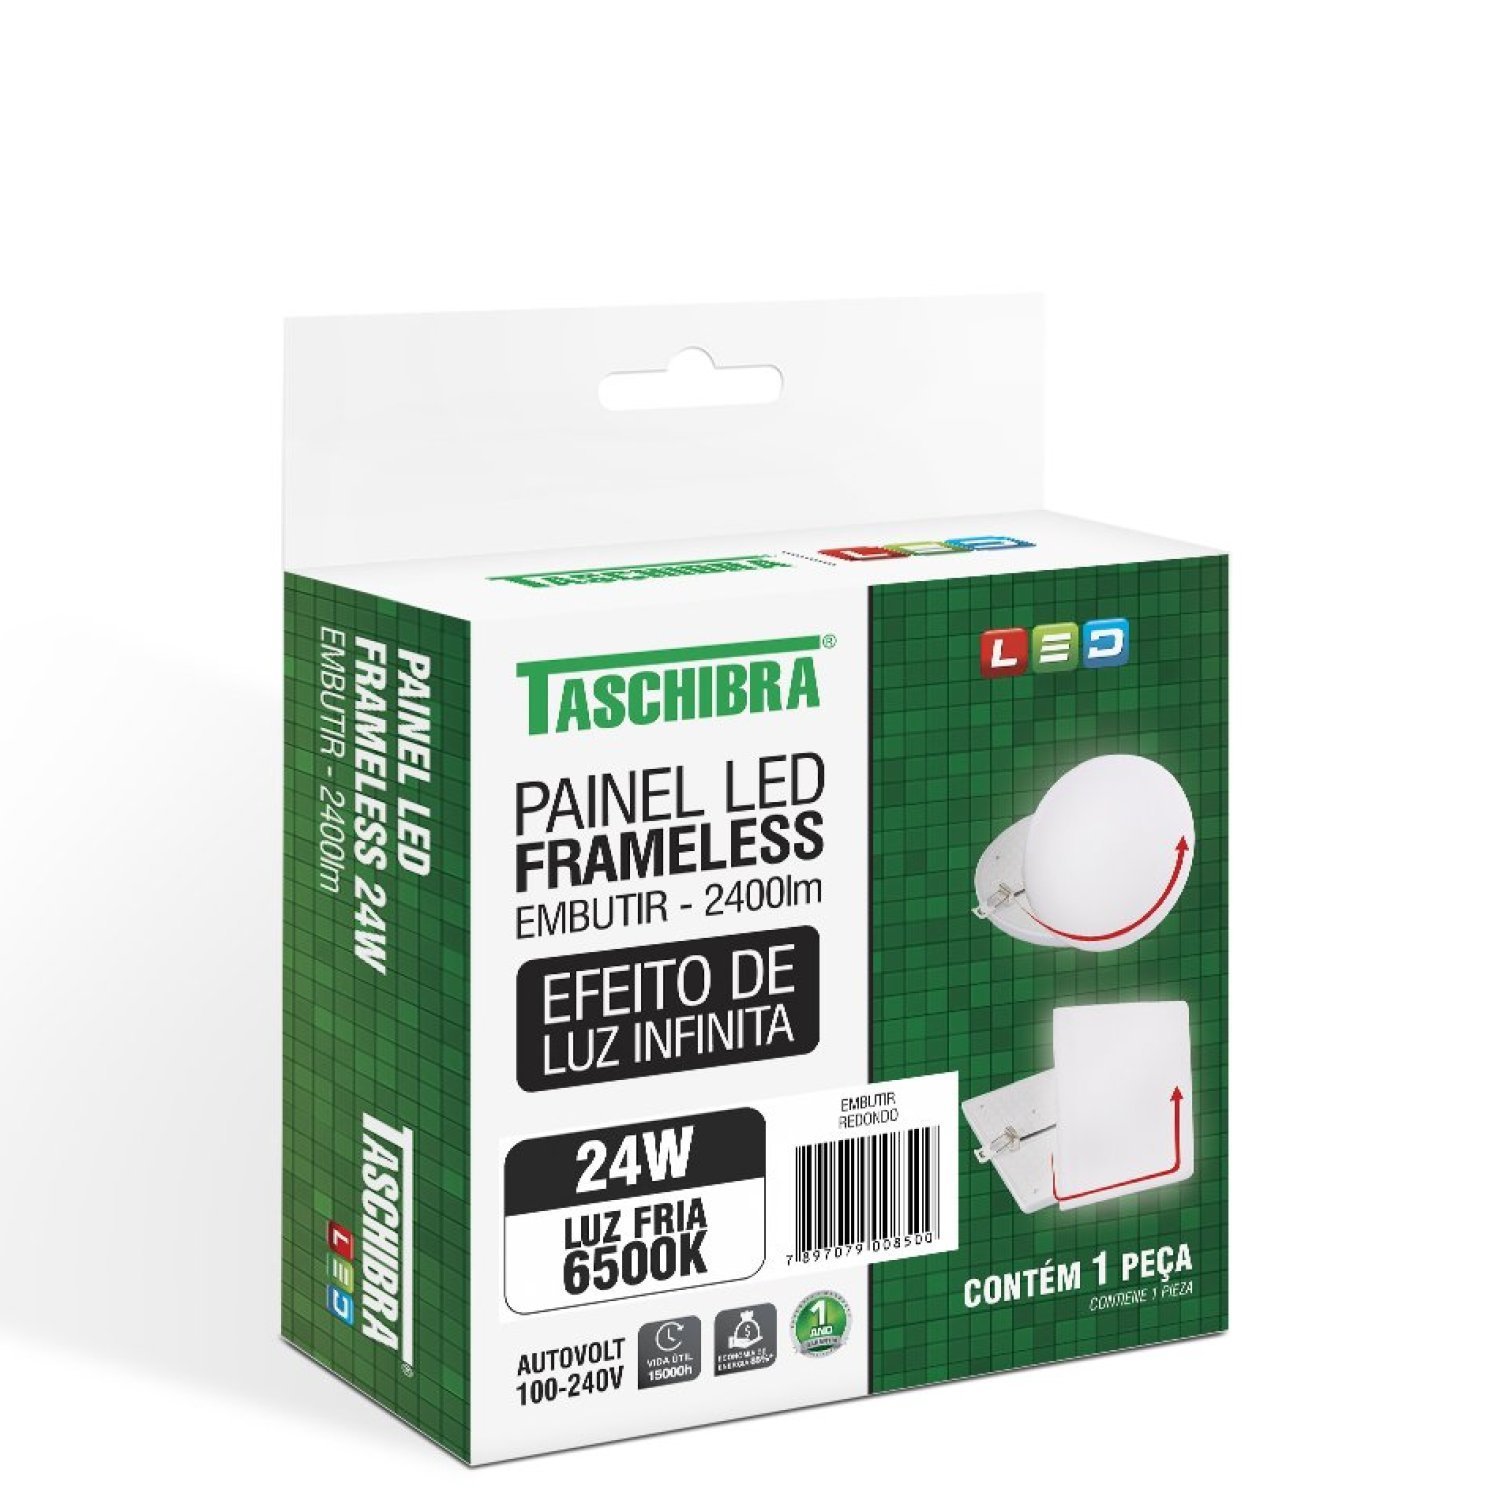 Painel LED Frameless Embutir 24W Redondo 6500K 15140107 Taschibra - 4